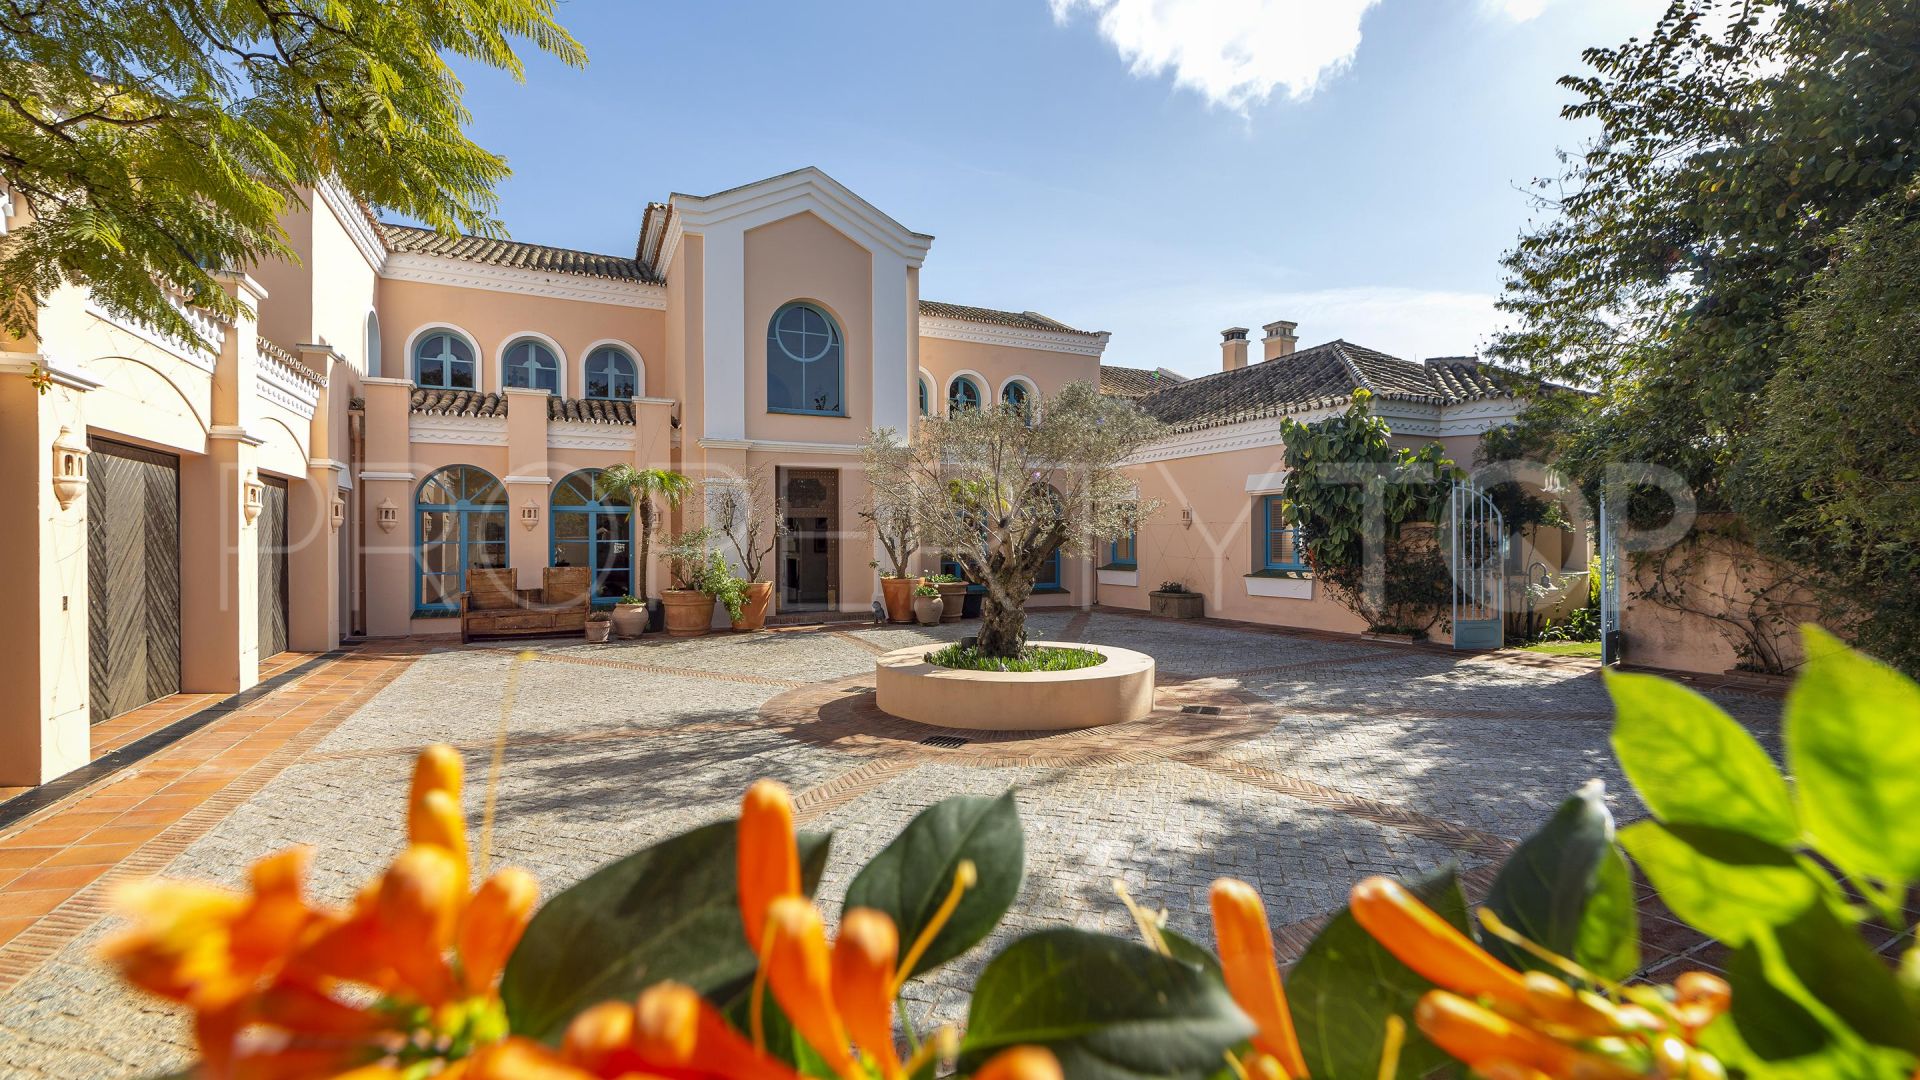 6 bedrooms villa in San Roque Club for sale